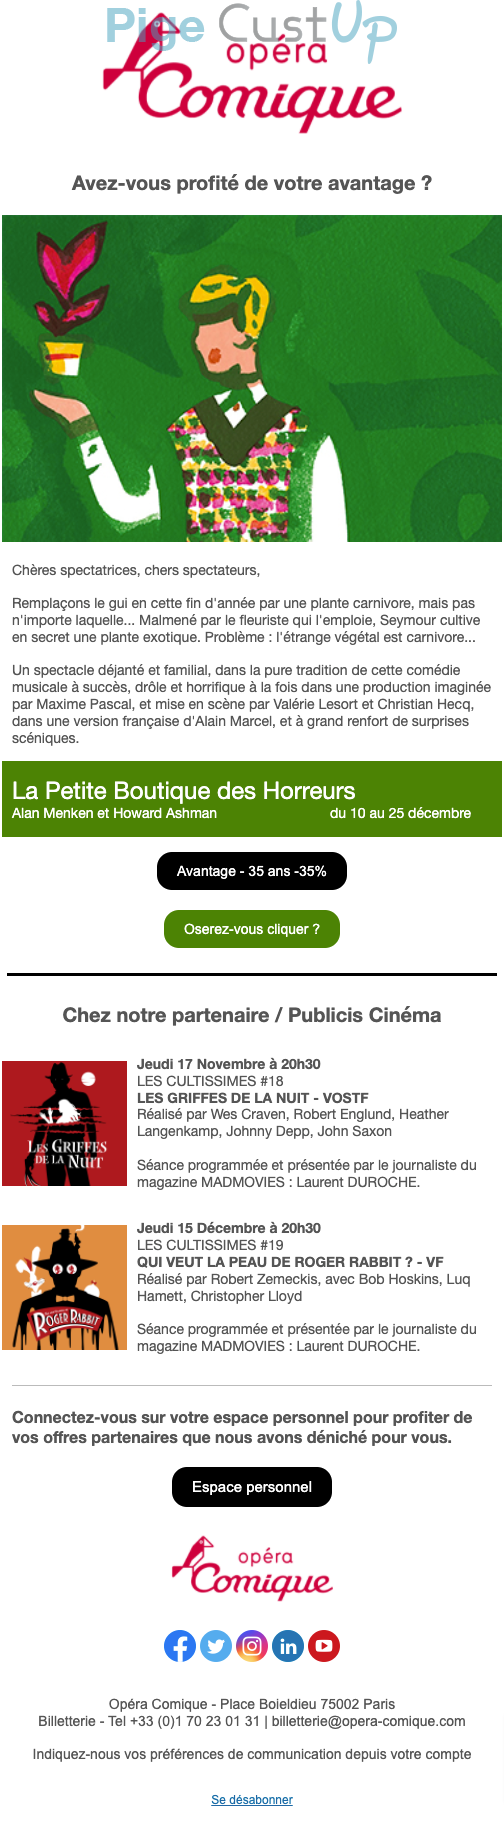 Exemple de Type de media  e-mailing - Opéra Comique - Marketing fidélisation - Incitation au réachat